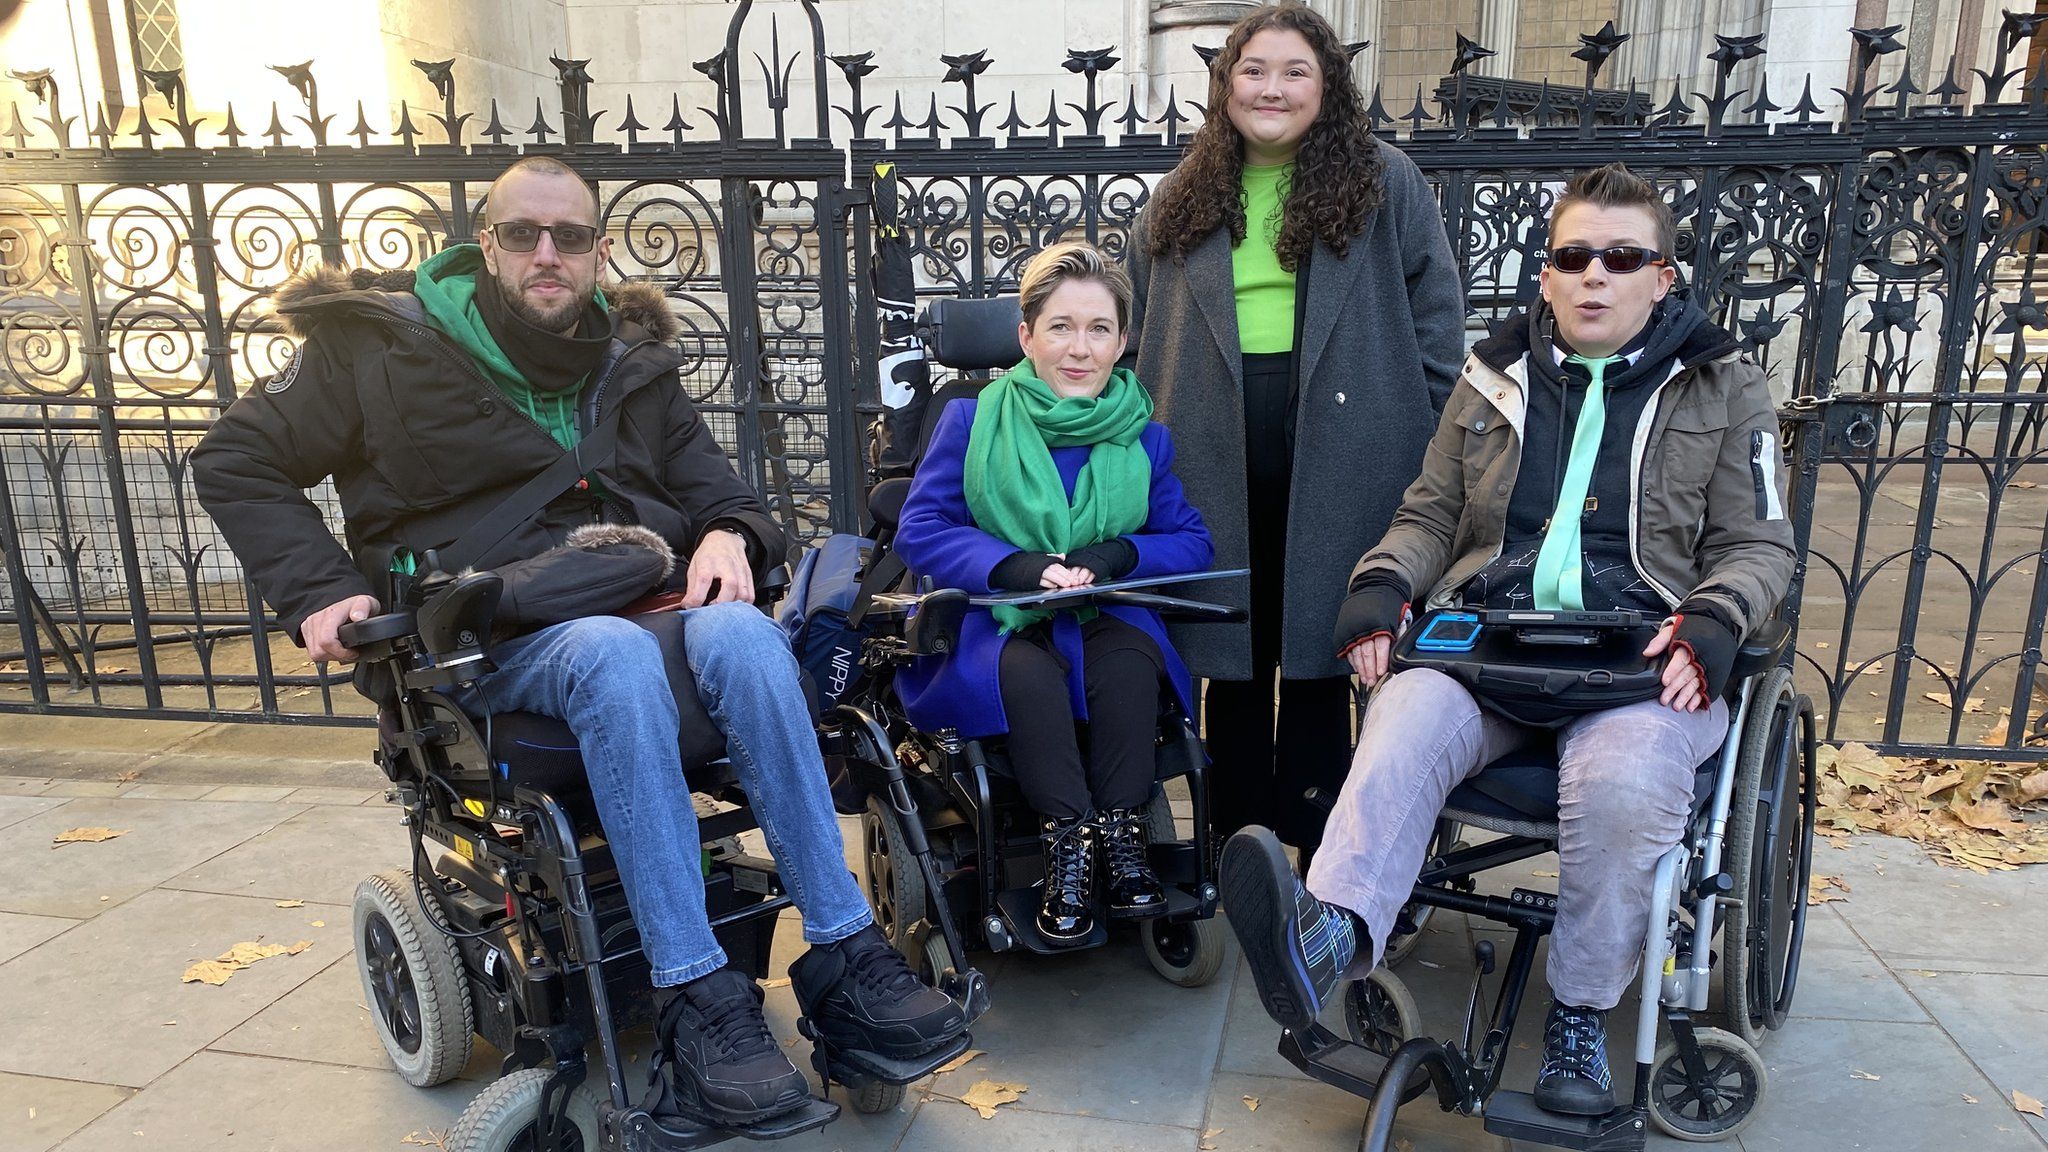 Кладдагские активисты возле Королевского суда. Адам Габси ушел, сидя на своем скутере. Сара Ренни (в центре) сидит на своем скутере. Джорджи Халм (справа) сидит в своем скутере возле Высокого суда.